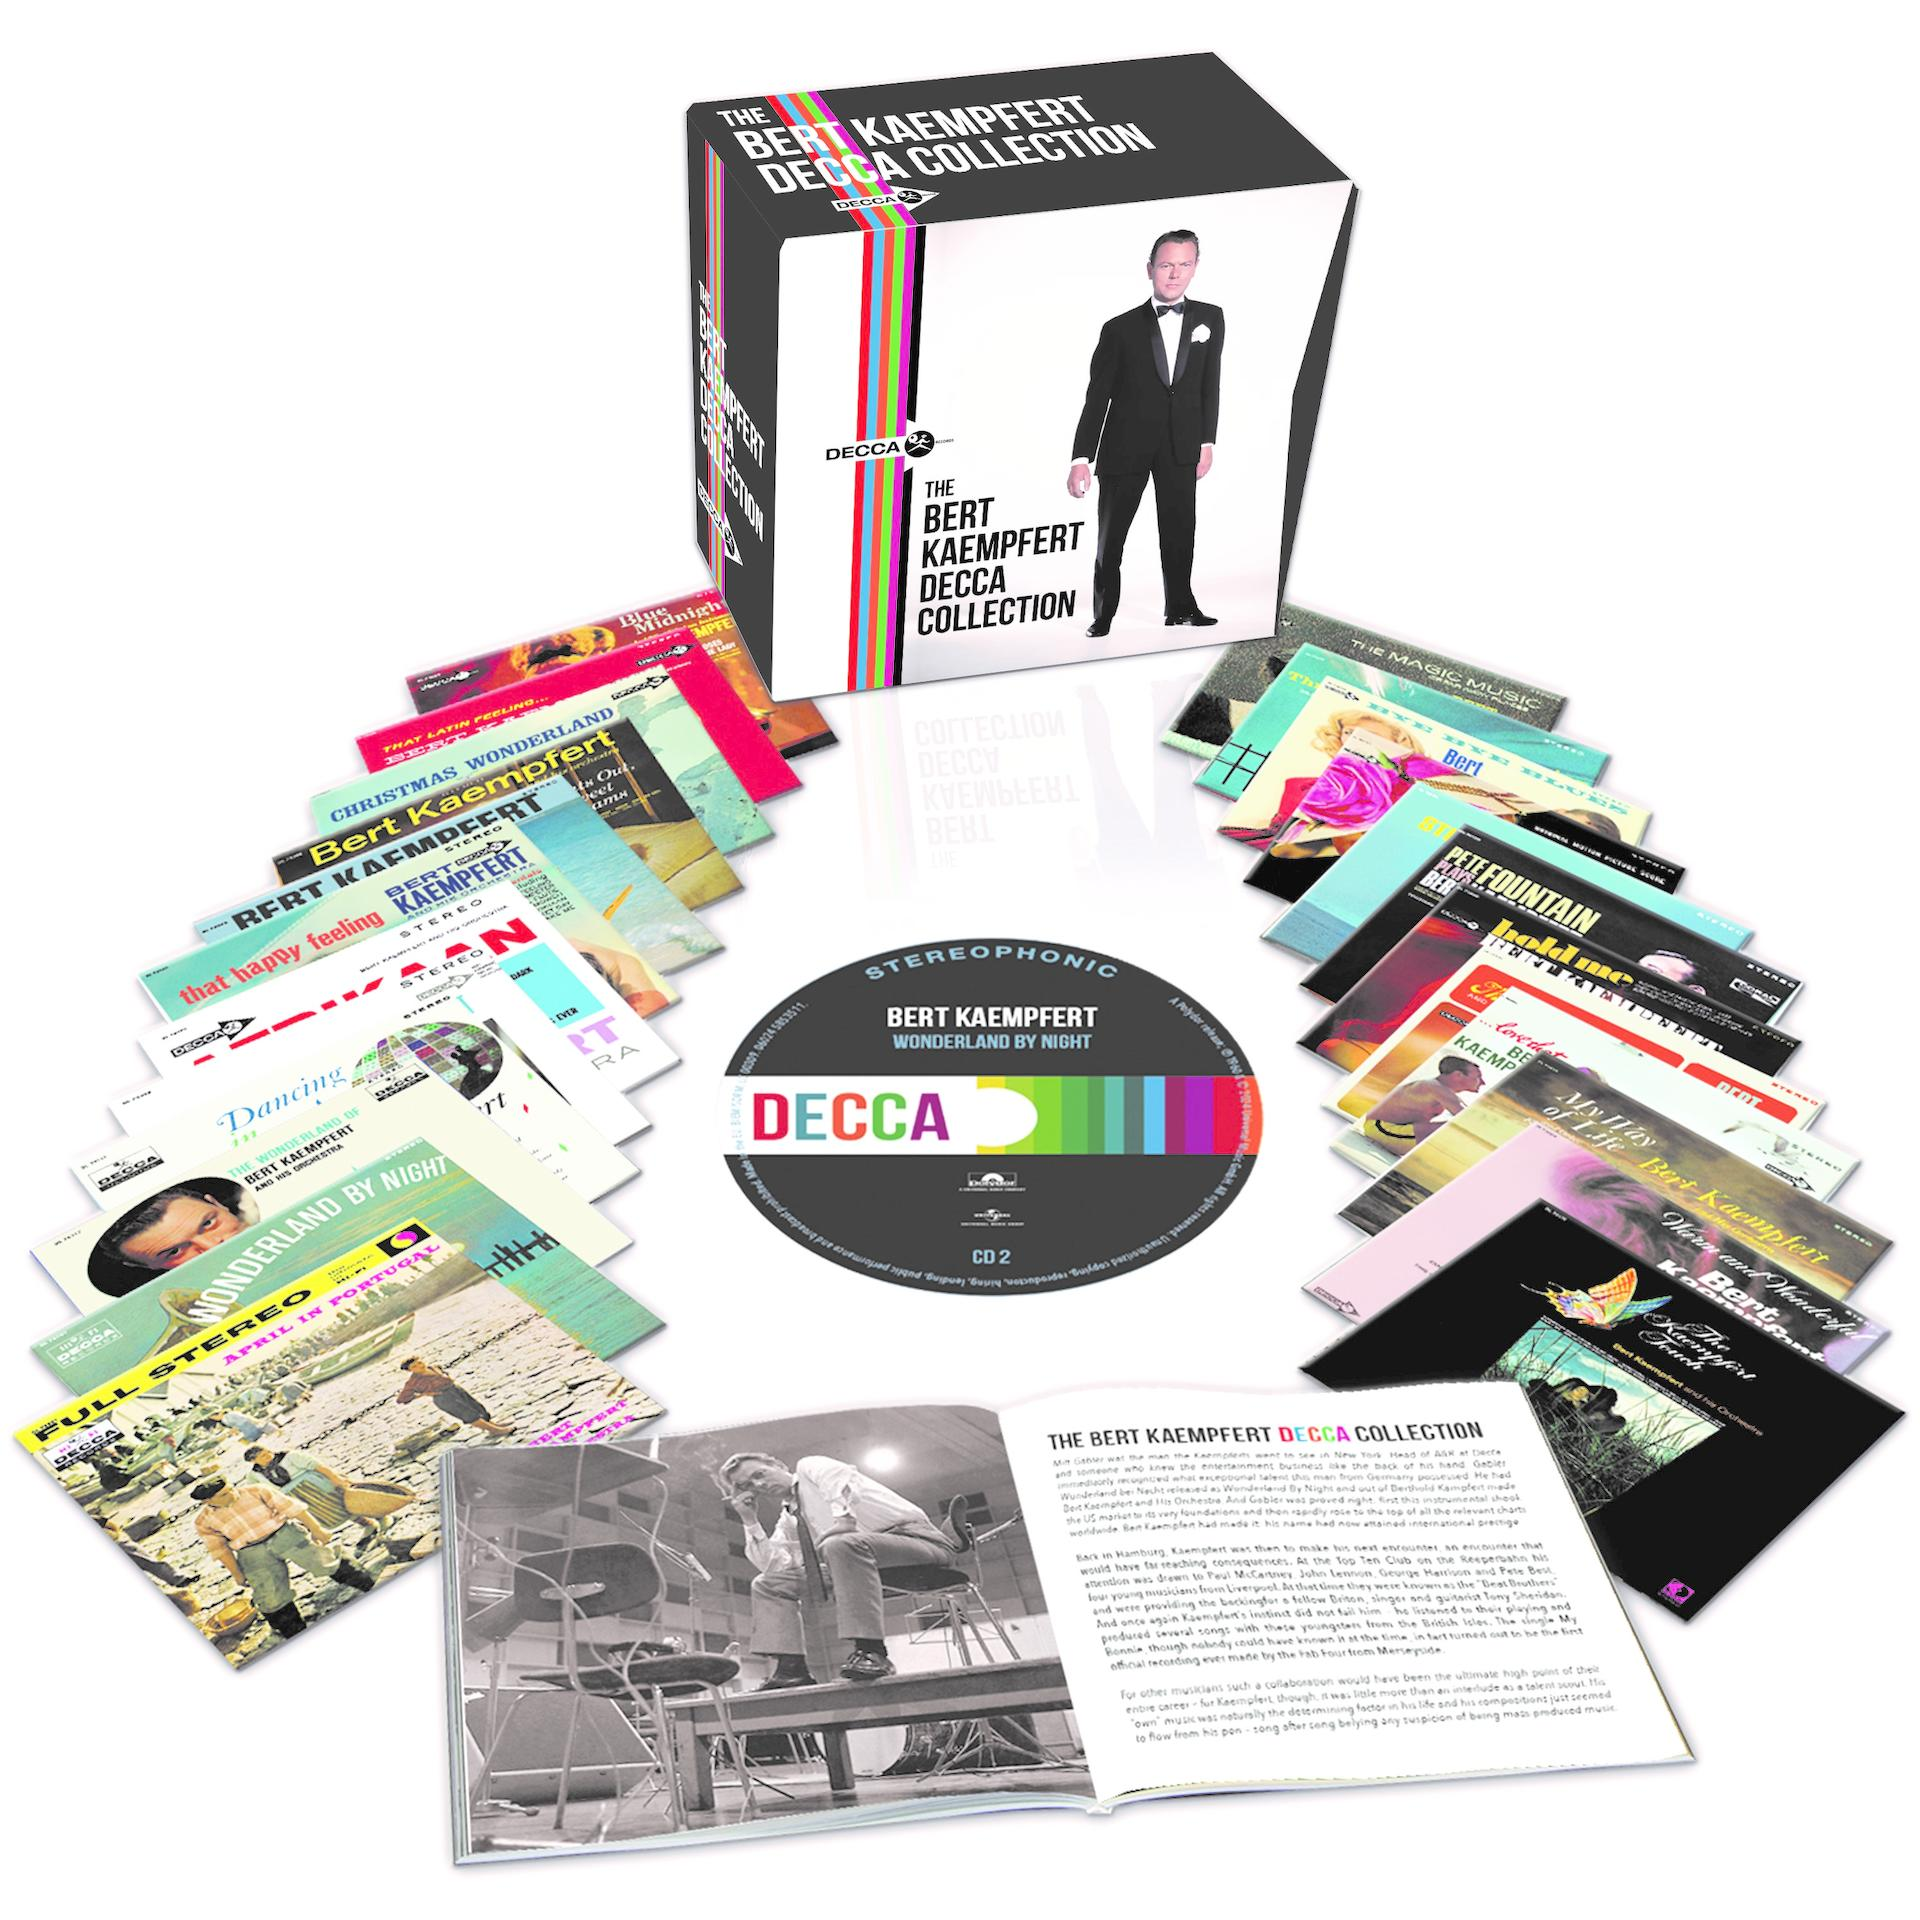 Kaempfert - (CD) - Box) Collection Decca Kaempfert Bert Bert The (24 CD